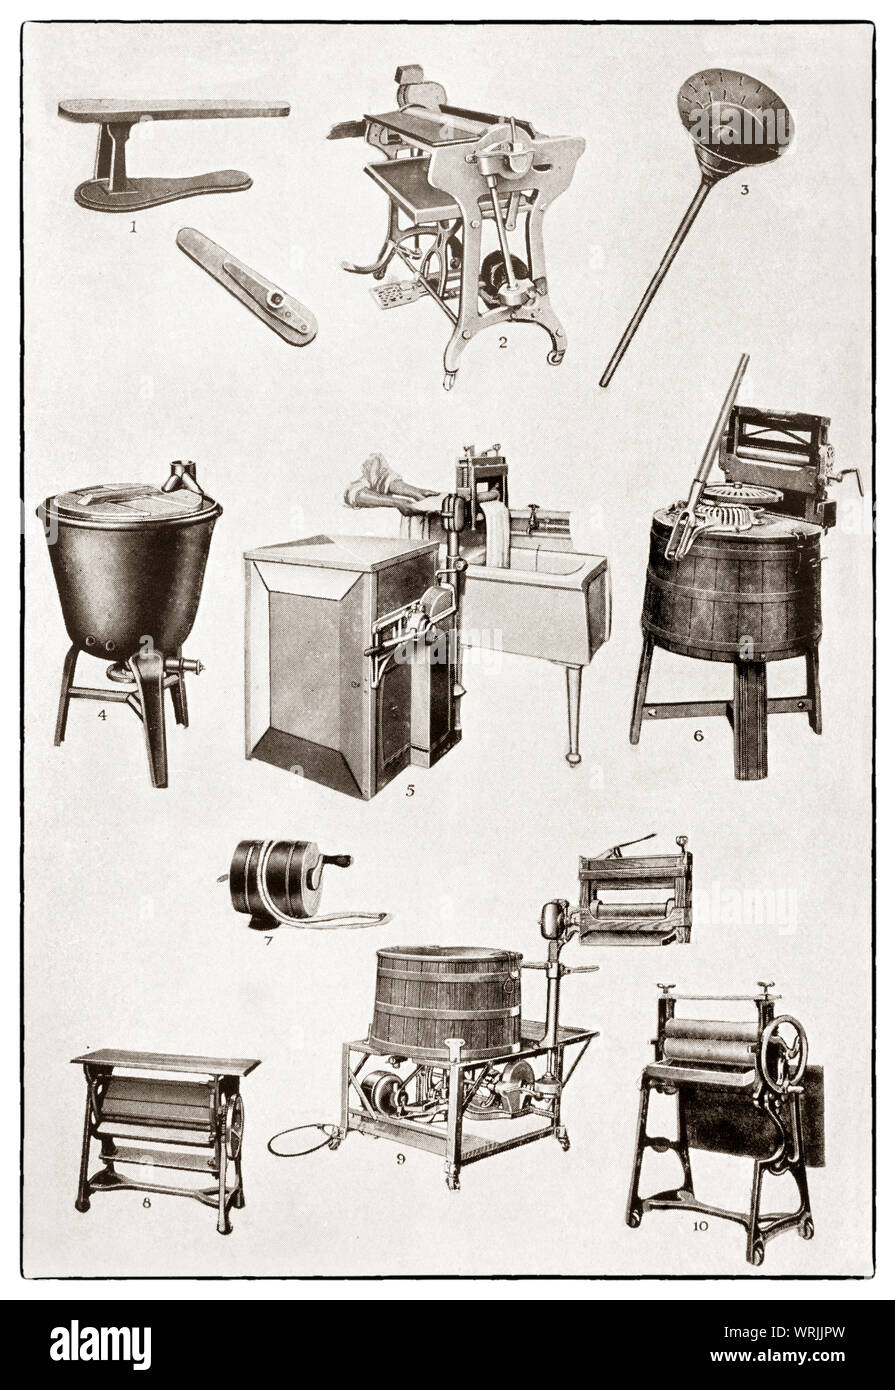 Le ultime kichenware visualizzato all'inizio degli anni trenta in Mrs Beeton 'Tutto su Cookery' edizione 1930. Primo piano di riciclaggio meccanico elementi includono 1. Il manicotto di stiratura; 2. elettrico macchina da stiro; 3. vuoto lavatrice; 4. gas riscaldato rame; 5. elettrico della macchina di lavaggio; 6. azionato a mano lavatrice; 7. i vestiti di protezione di linea; 8&10. la tabella mangle; 9. Rondella elettrico e strizzatore Foto Stock